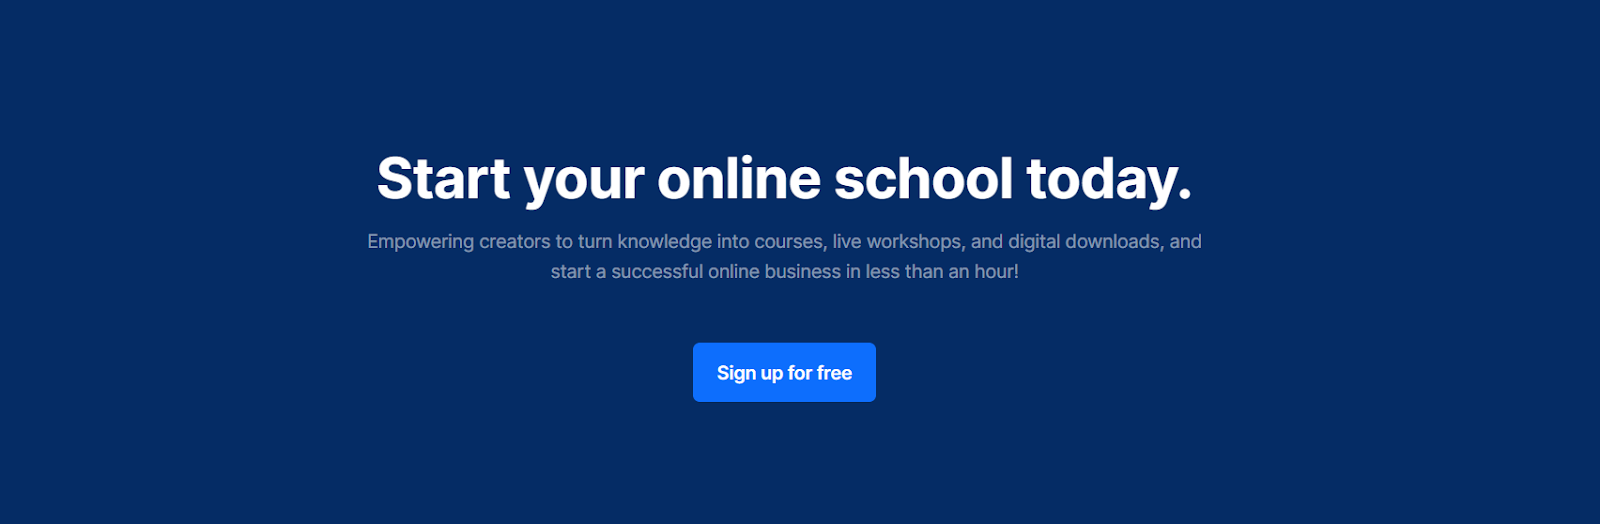 Start Your Online School today